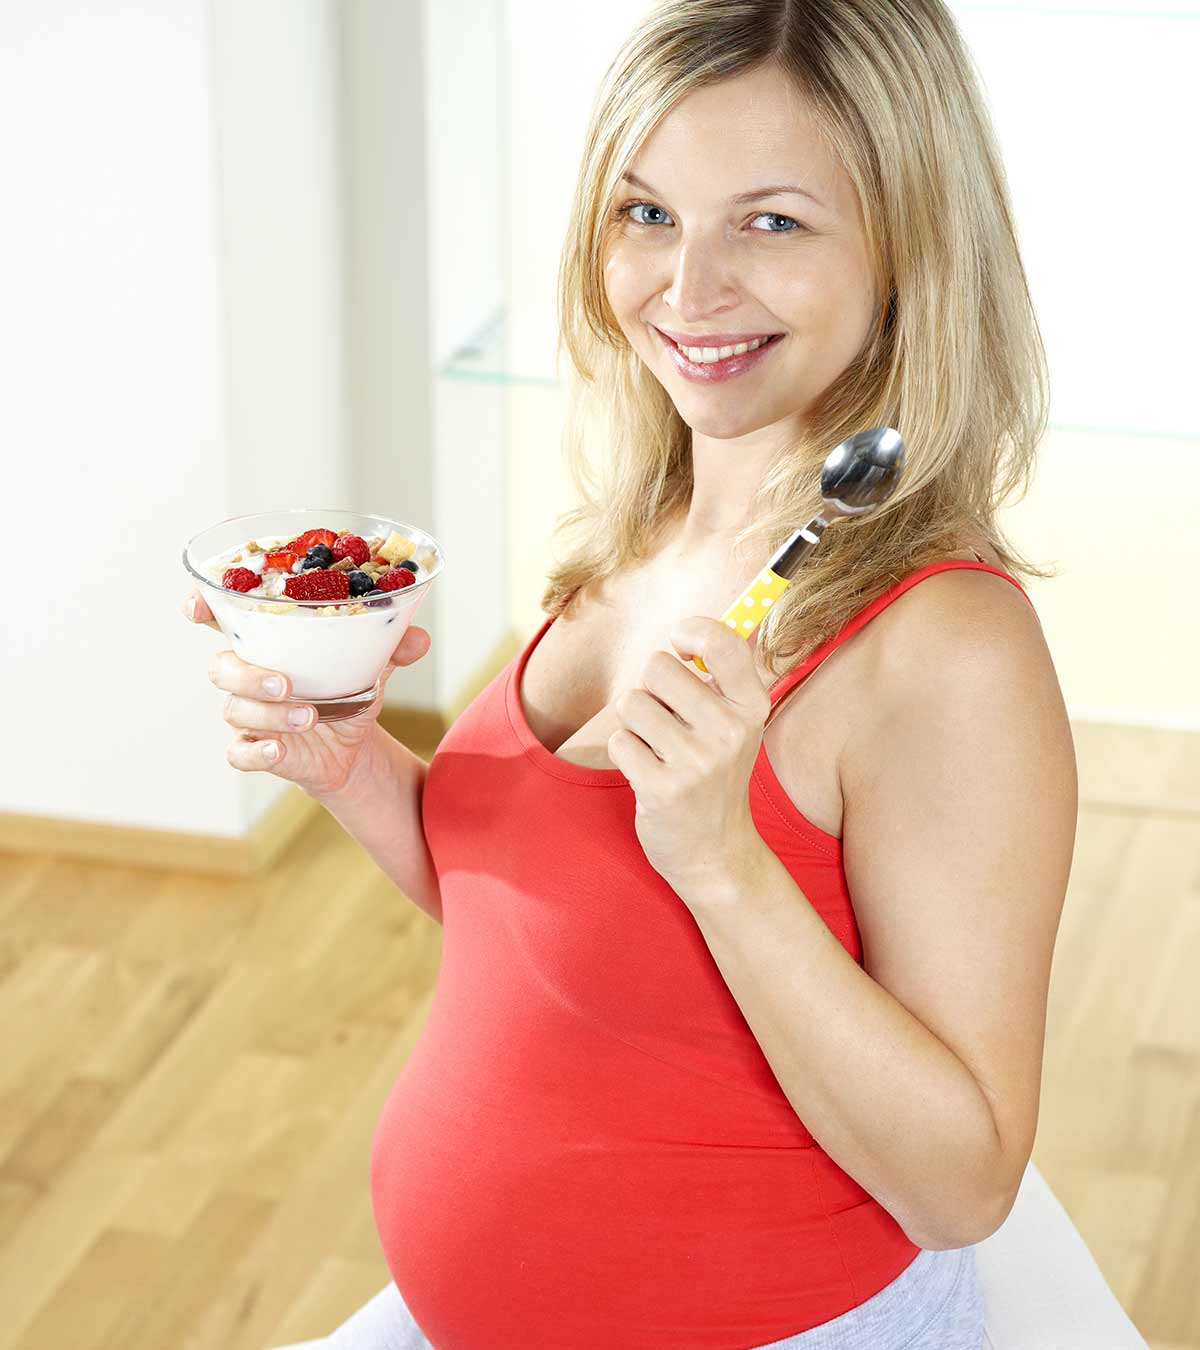 Can I Eat Chobani Yogurt While Pregnant? 